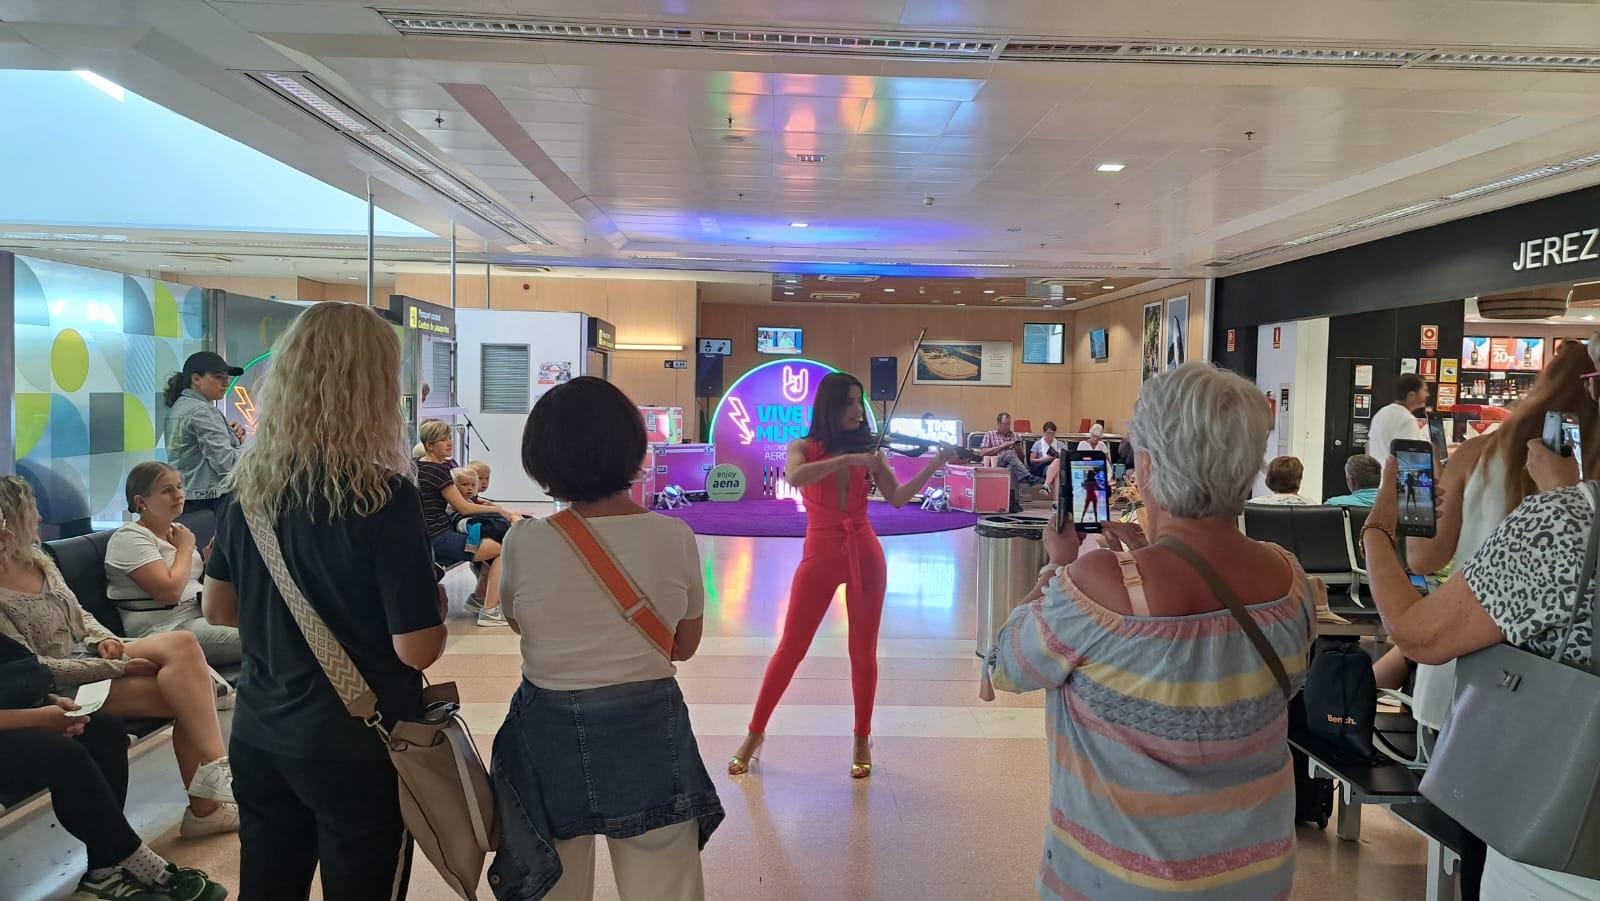 El Aeropuerto de Jerez acoge actuaciones en directo para celebrar la llegada del verano